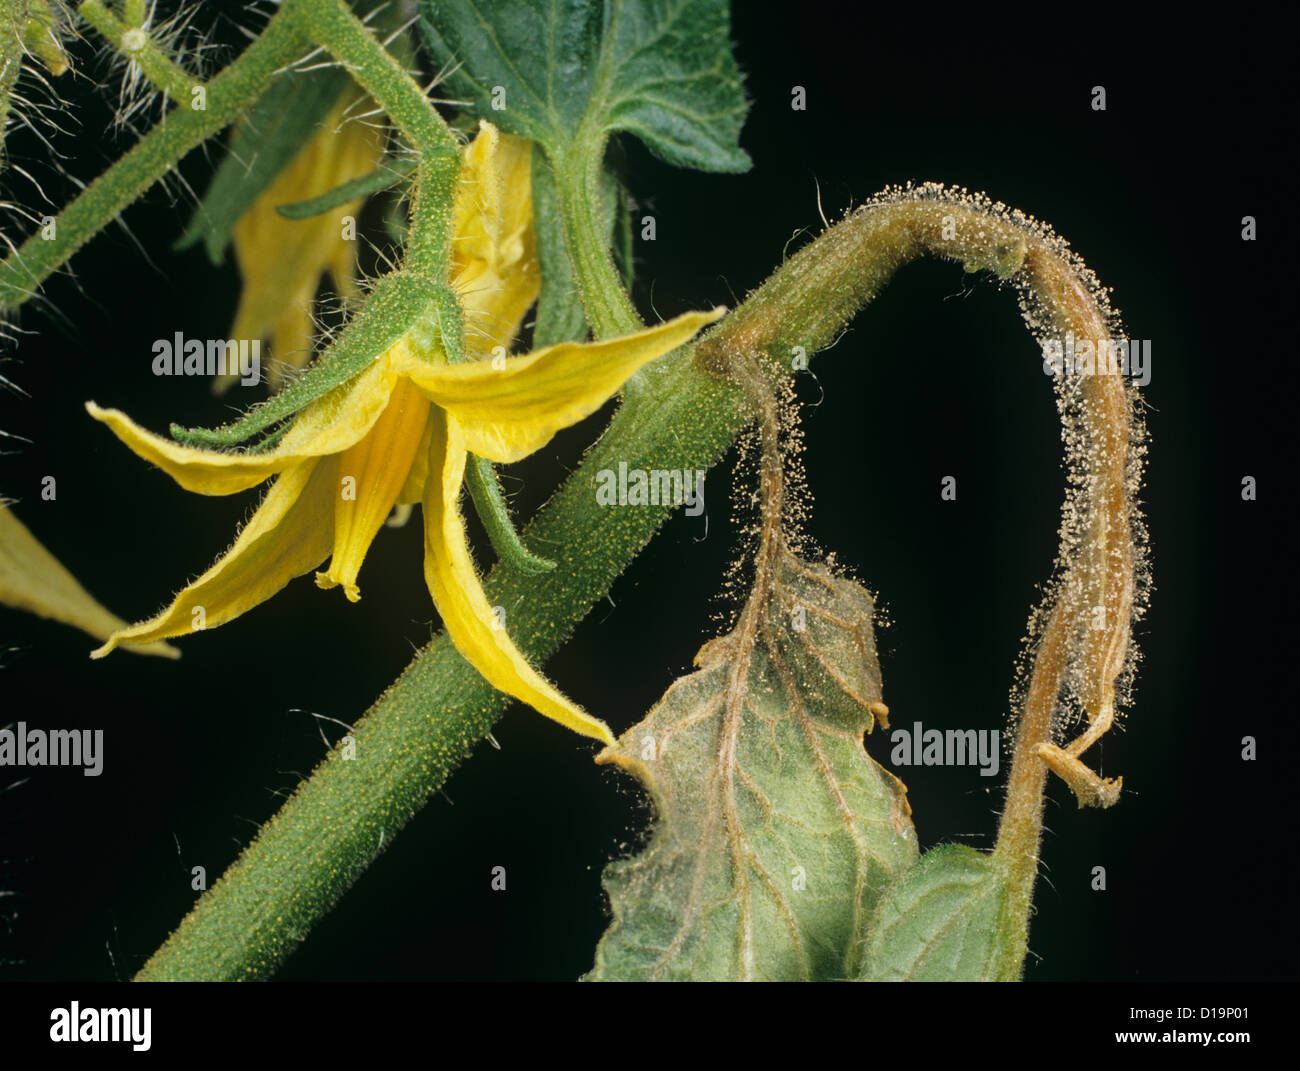 Rey del molde (Botrytis cinerea) desarrollando en hojas de tomate durante la floración Foto de stock